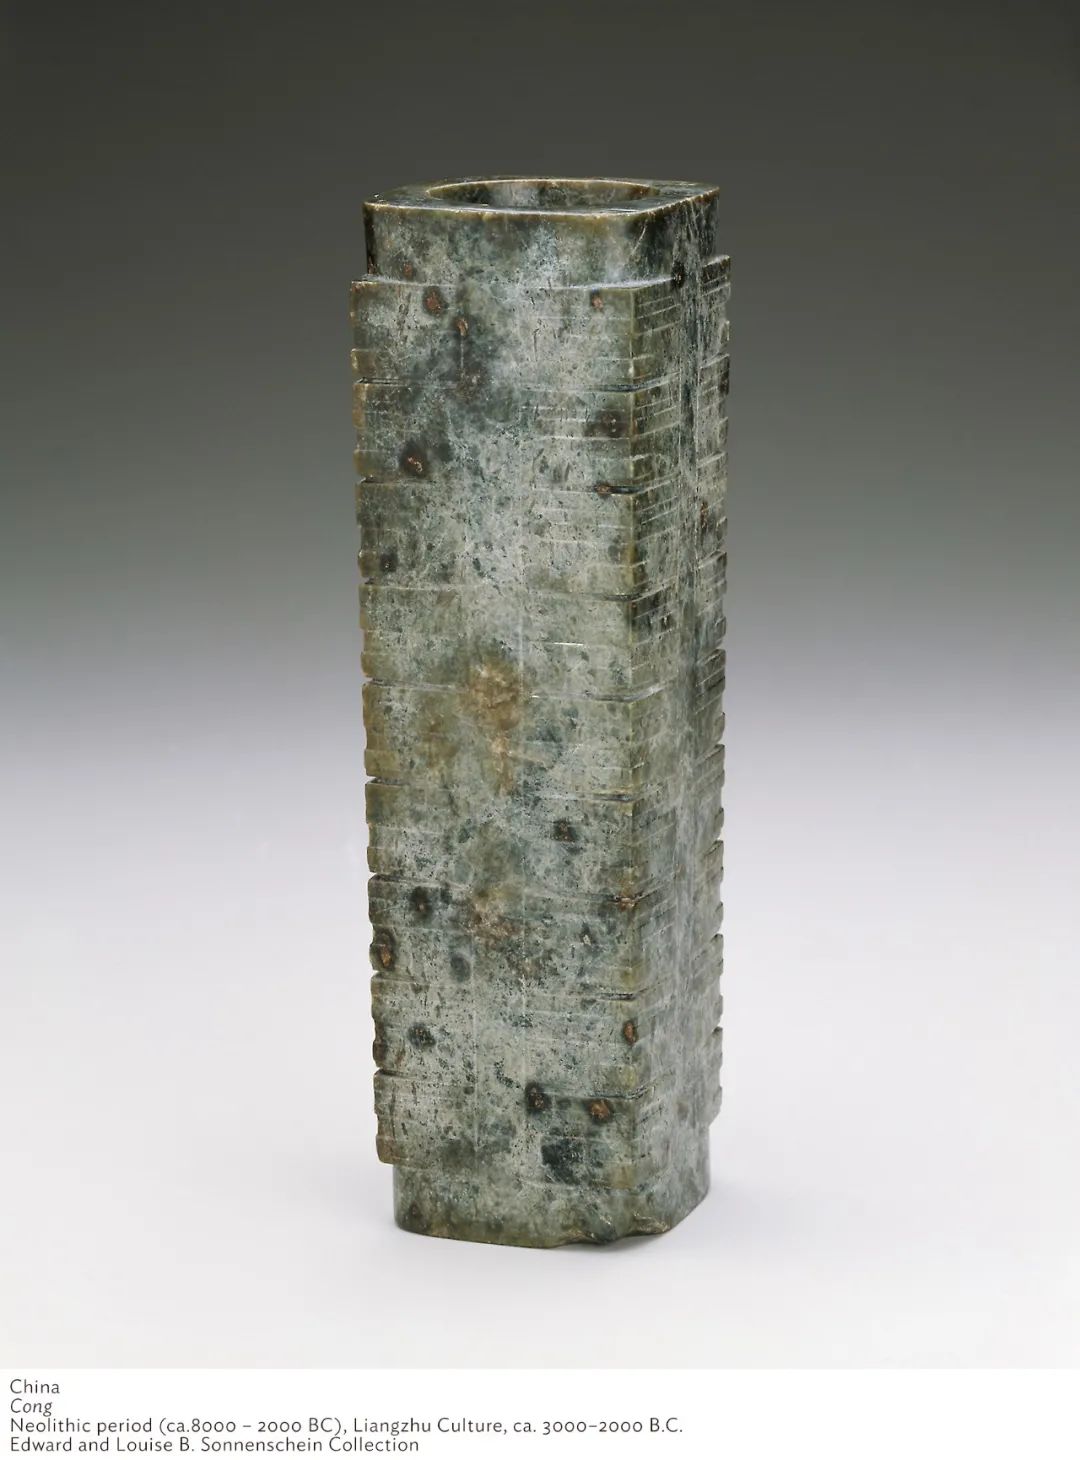 玉琮，良渚文化（公元前3300 - 2500年），芝加哥艺术博物馆